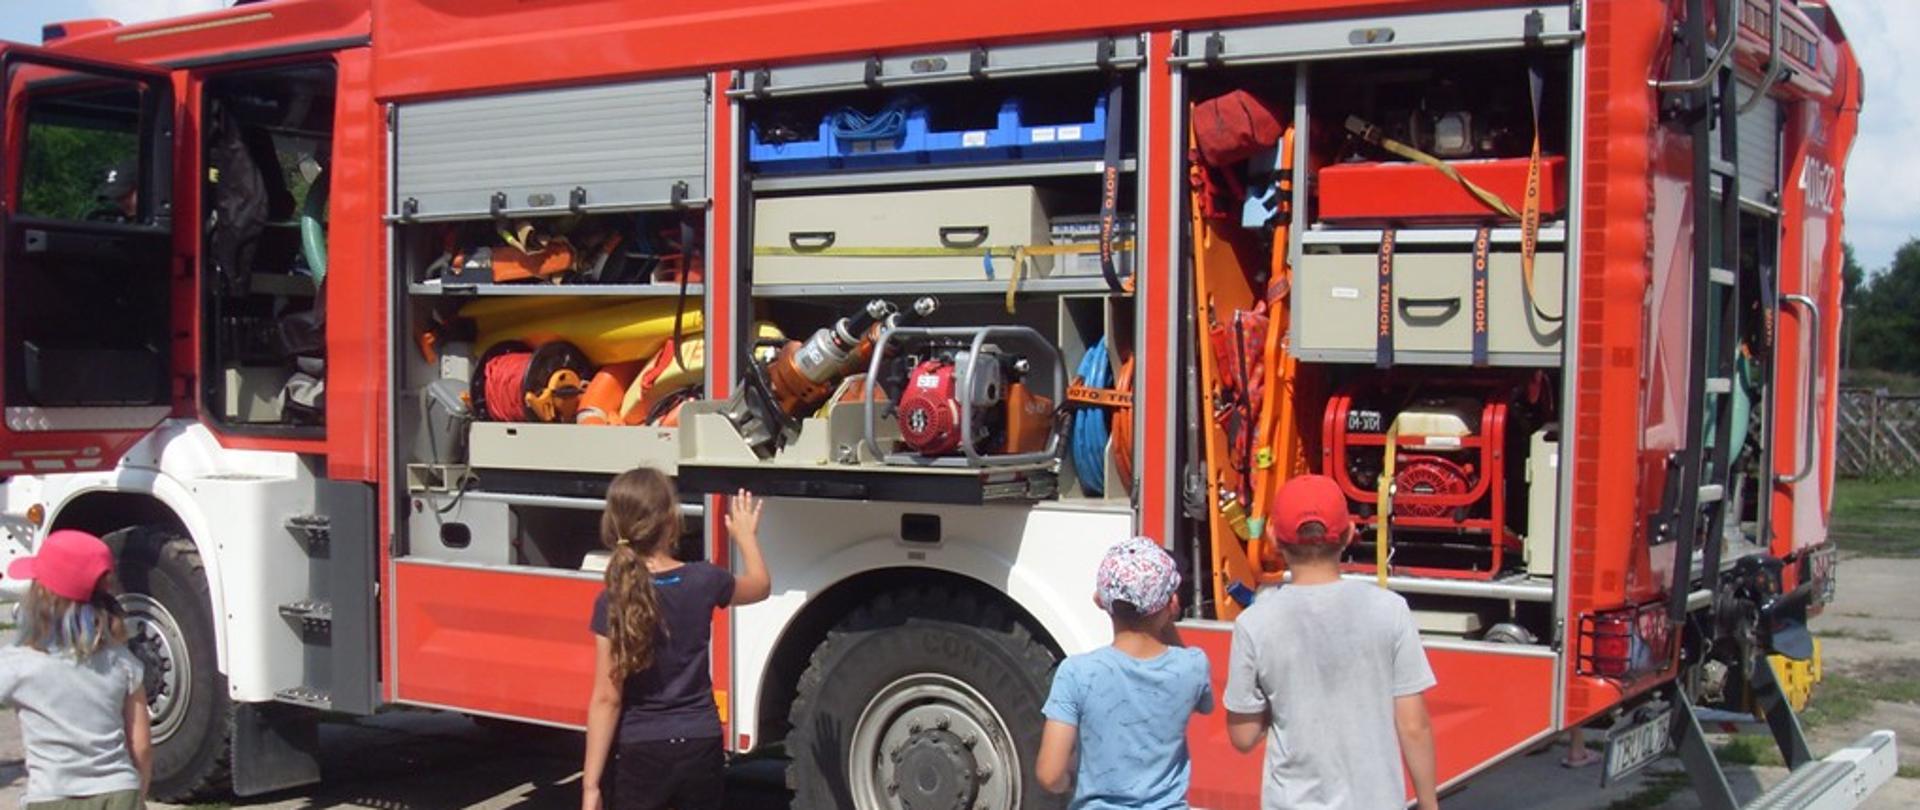 Zdjęcie przedstawia grupę uczestników prelekcji oglądających wyposażenie samochodu pożarniczego